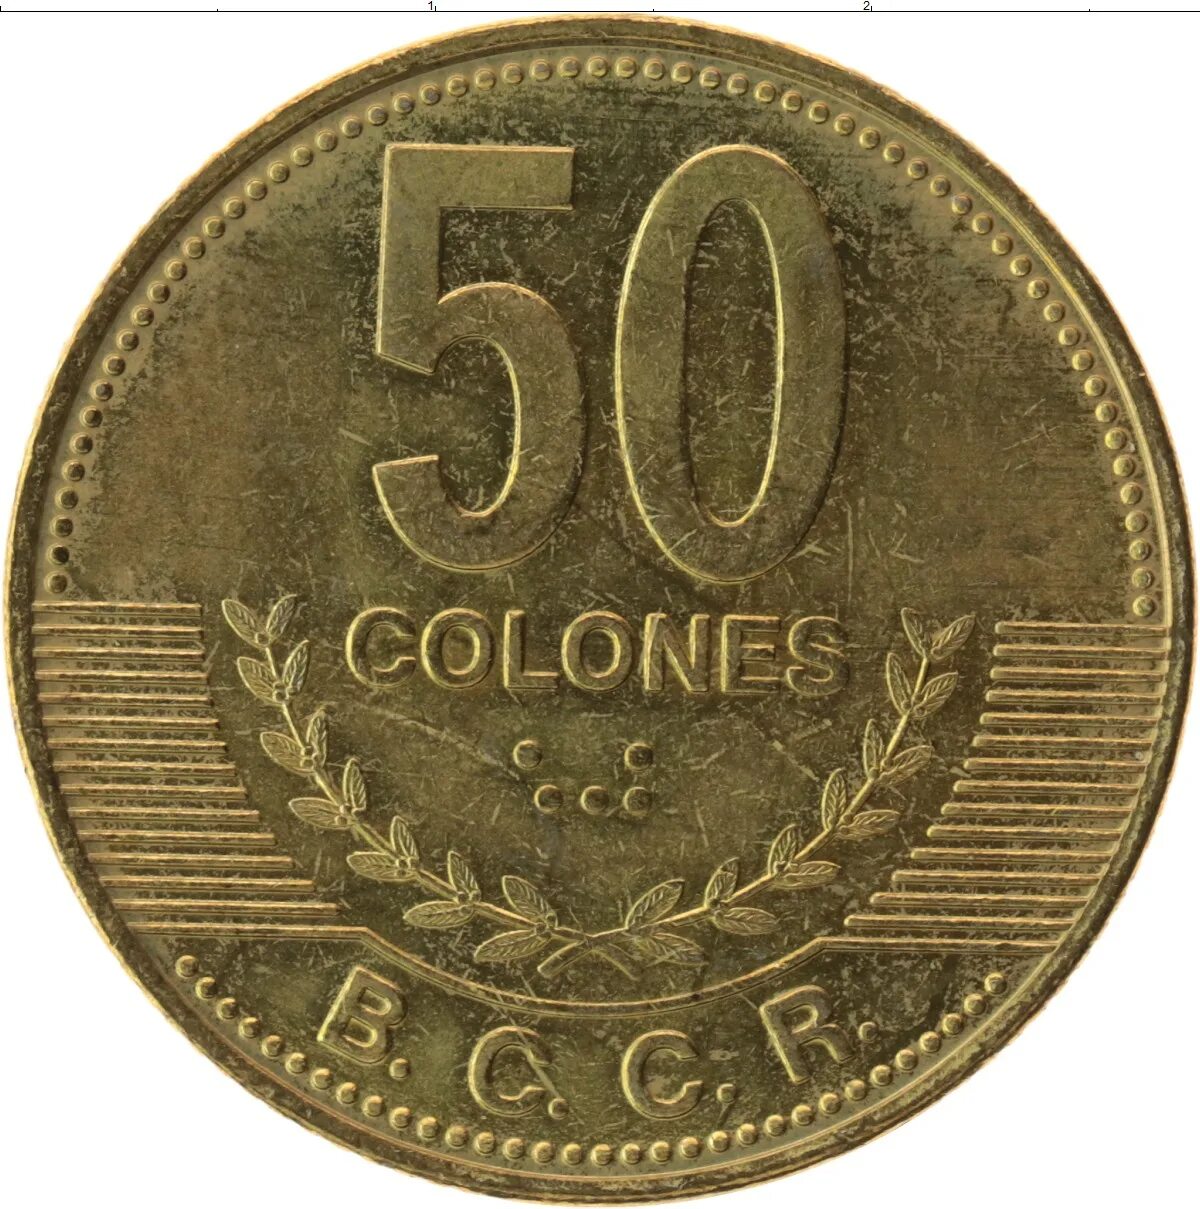 10 от 80 рублей. 500 Колонов 2007 Коста-Рика. Монета 50 JRUU 2003. 80 Рублей. Монета 50 ойре какая Страна.